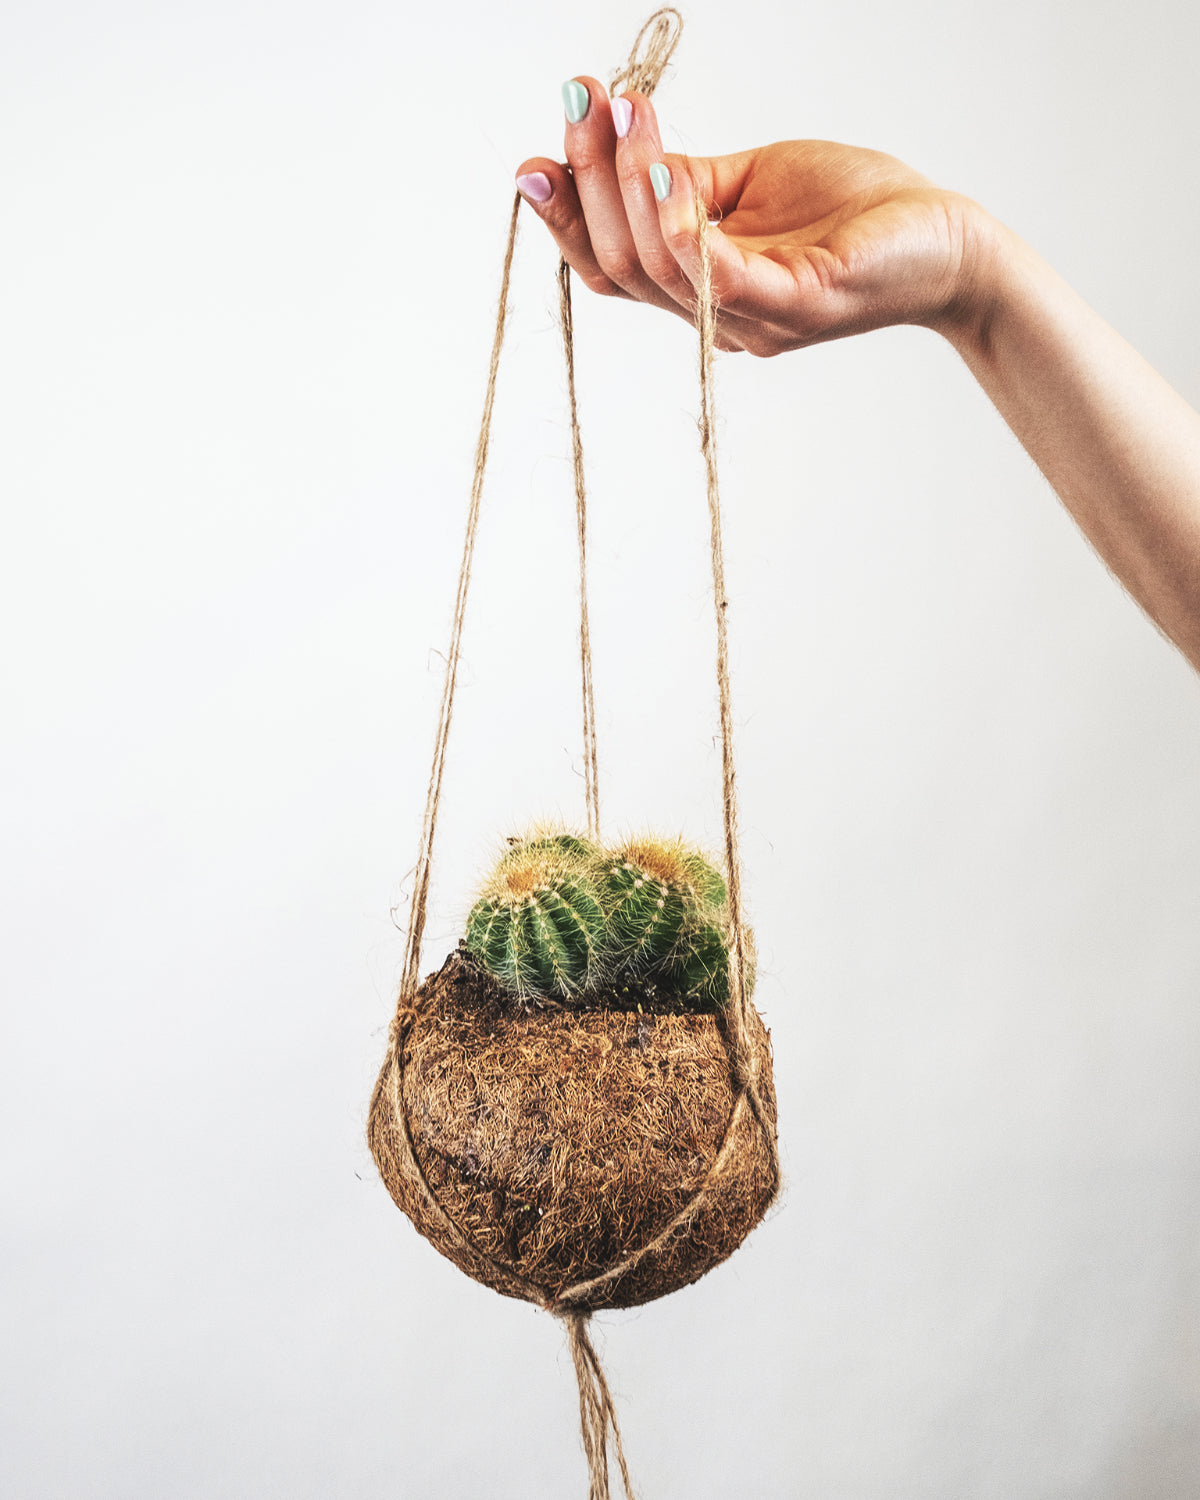 Kaktus im Kokoskorb hängt von einer Hand